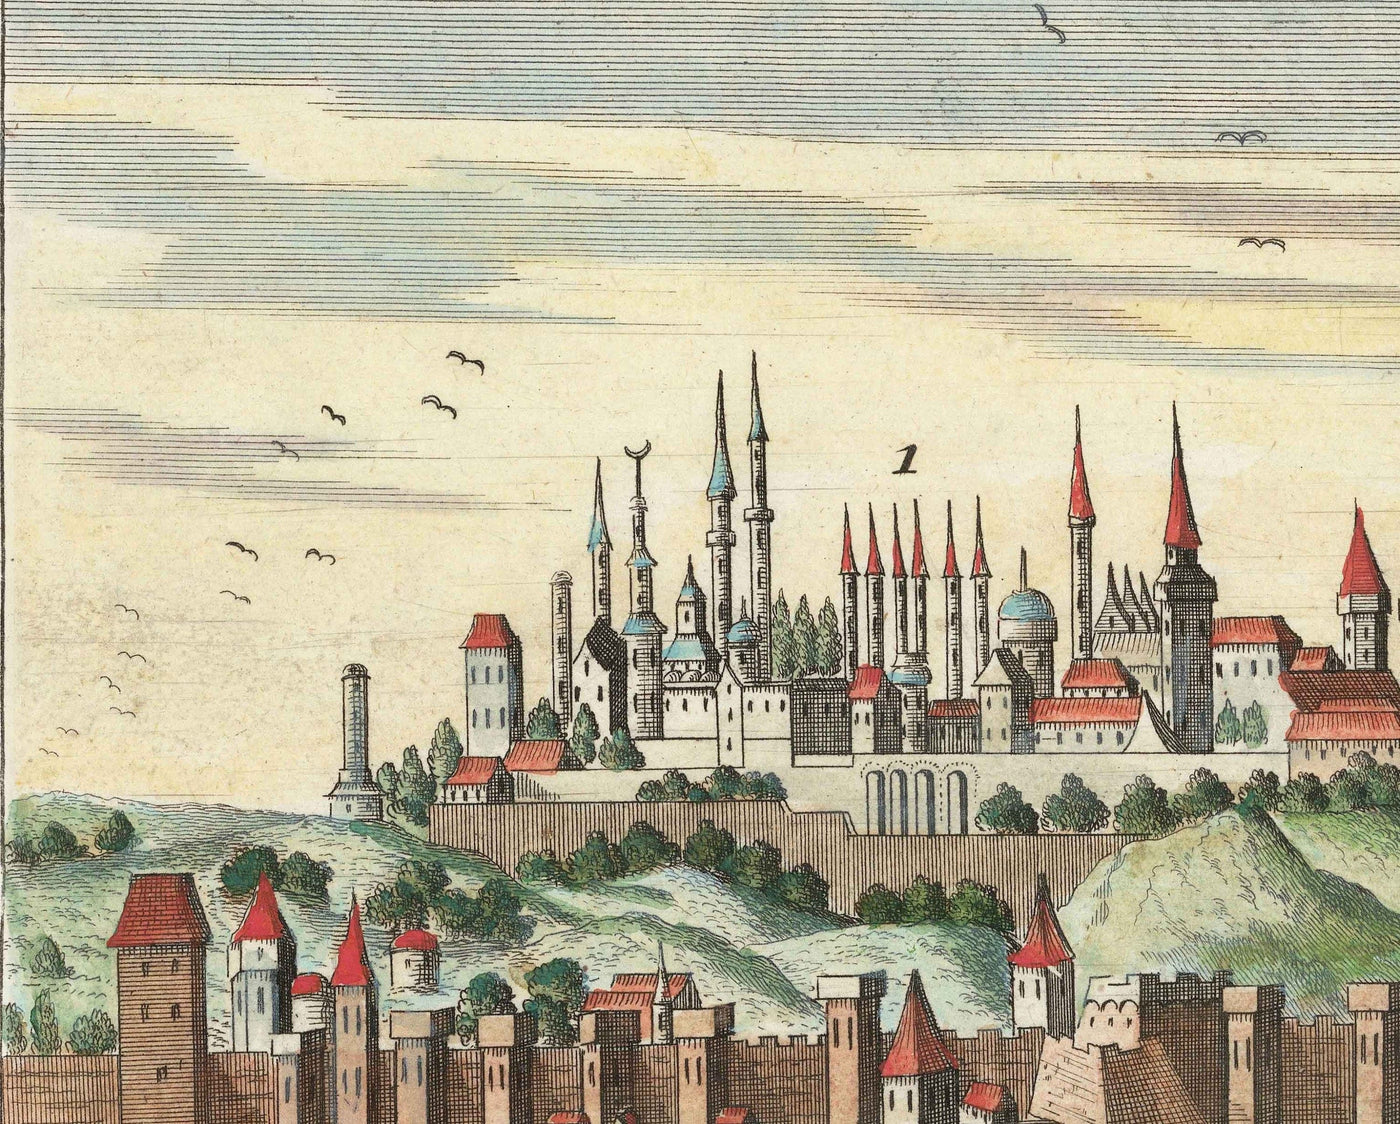 Mapa antiguo de Estambul (Constantinopla) 1720 por Wolff - Arquitectura otomana y bizantina - Palacio Topkapi, Santa Sofía, Mezquitas